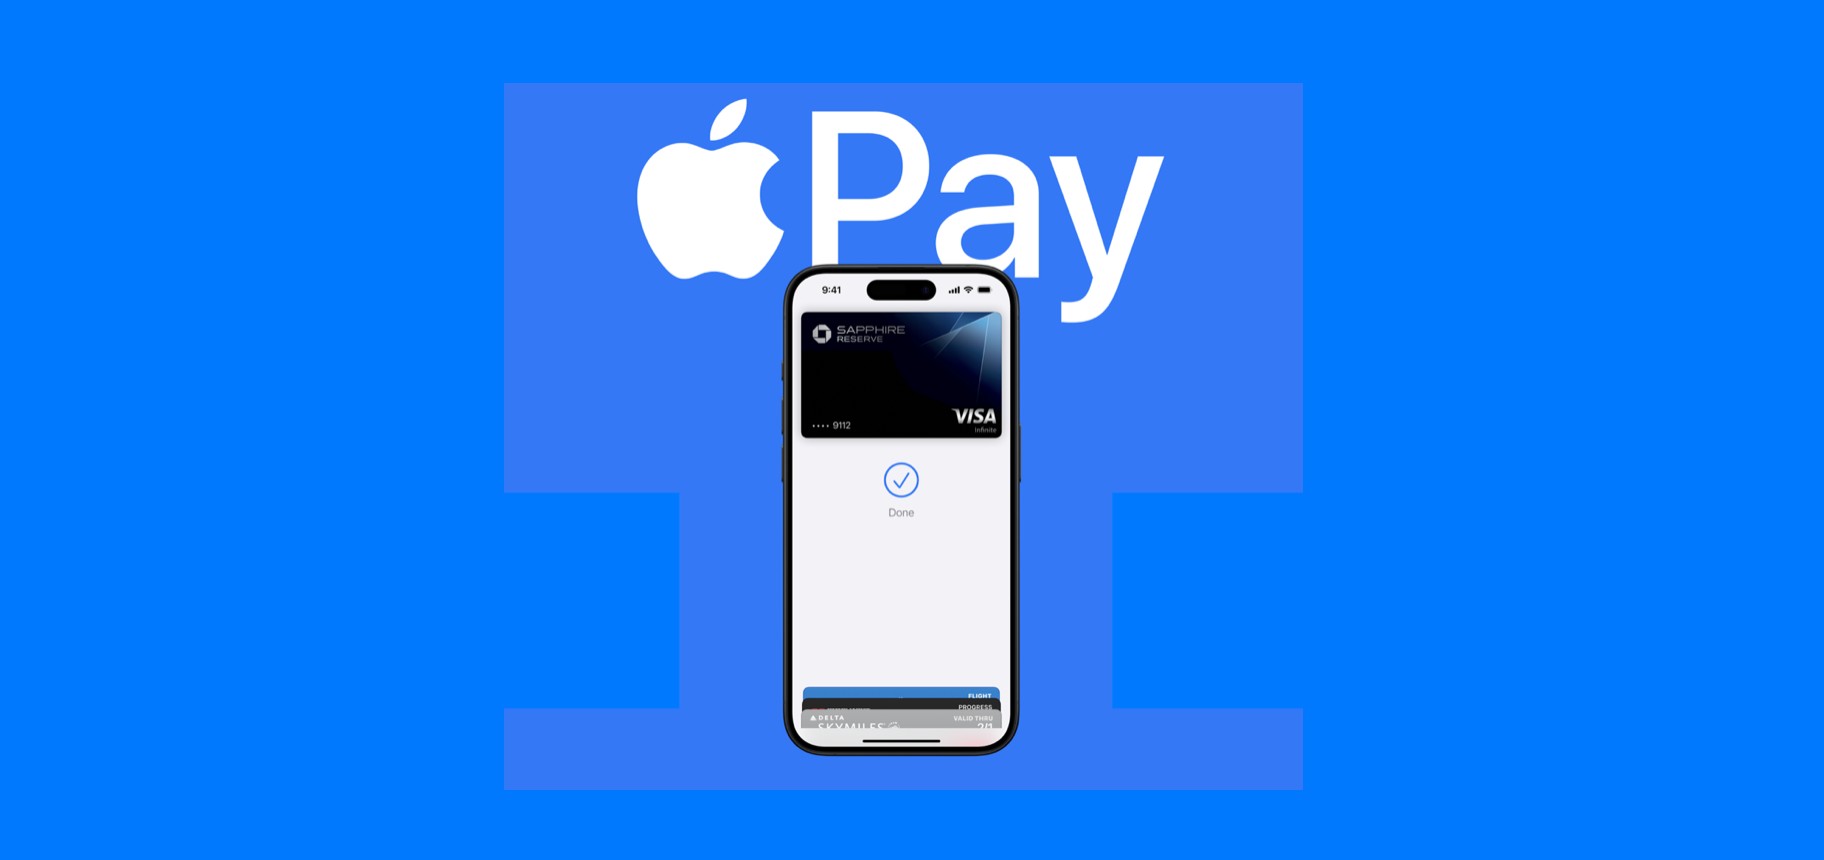 Apple finisce in tribunale con l'accusa di monopolio nei pagamenti digitali